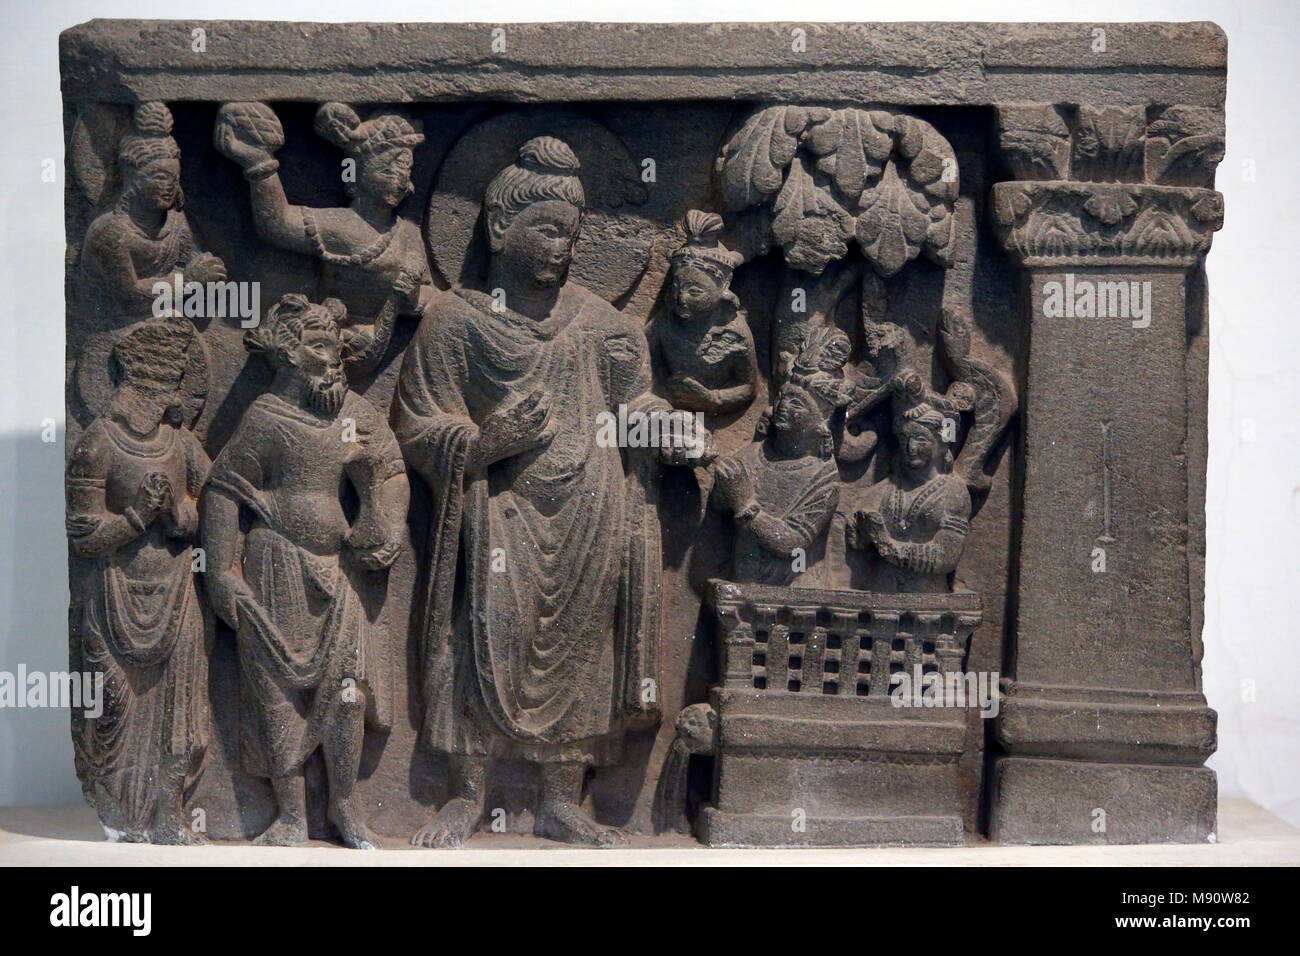 National Museum von Indien, Delhi. Buddha mit Naga-Kalika. Gandhara, 2. Jahrhundert n. Chr., Stein. Darlehen von der Mayo College Museum, Ajmer. Indien. Stockfoto